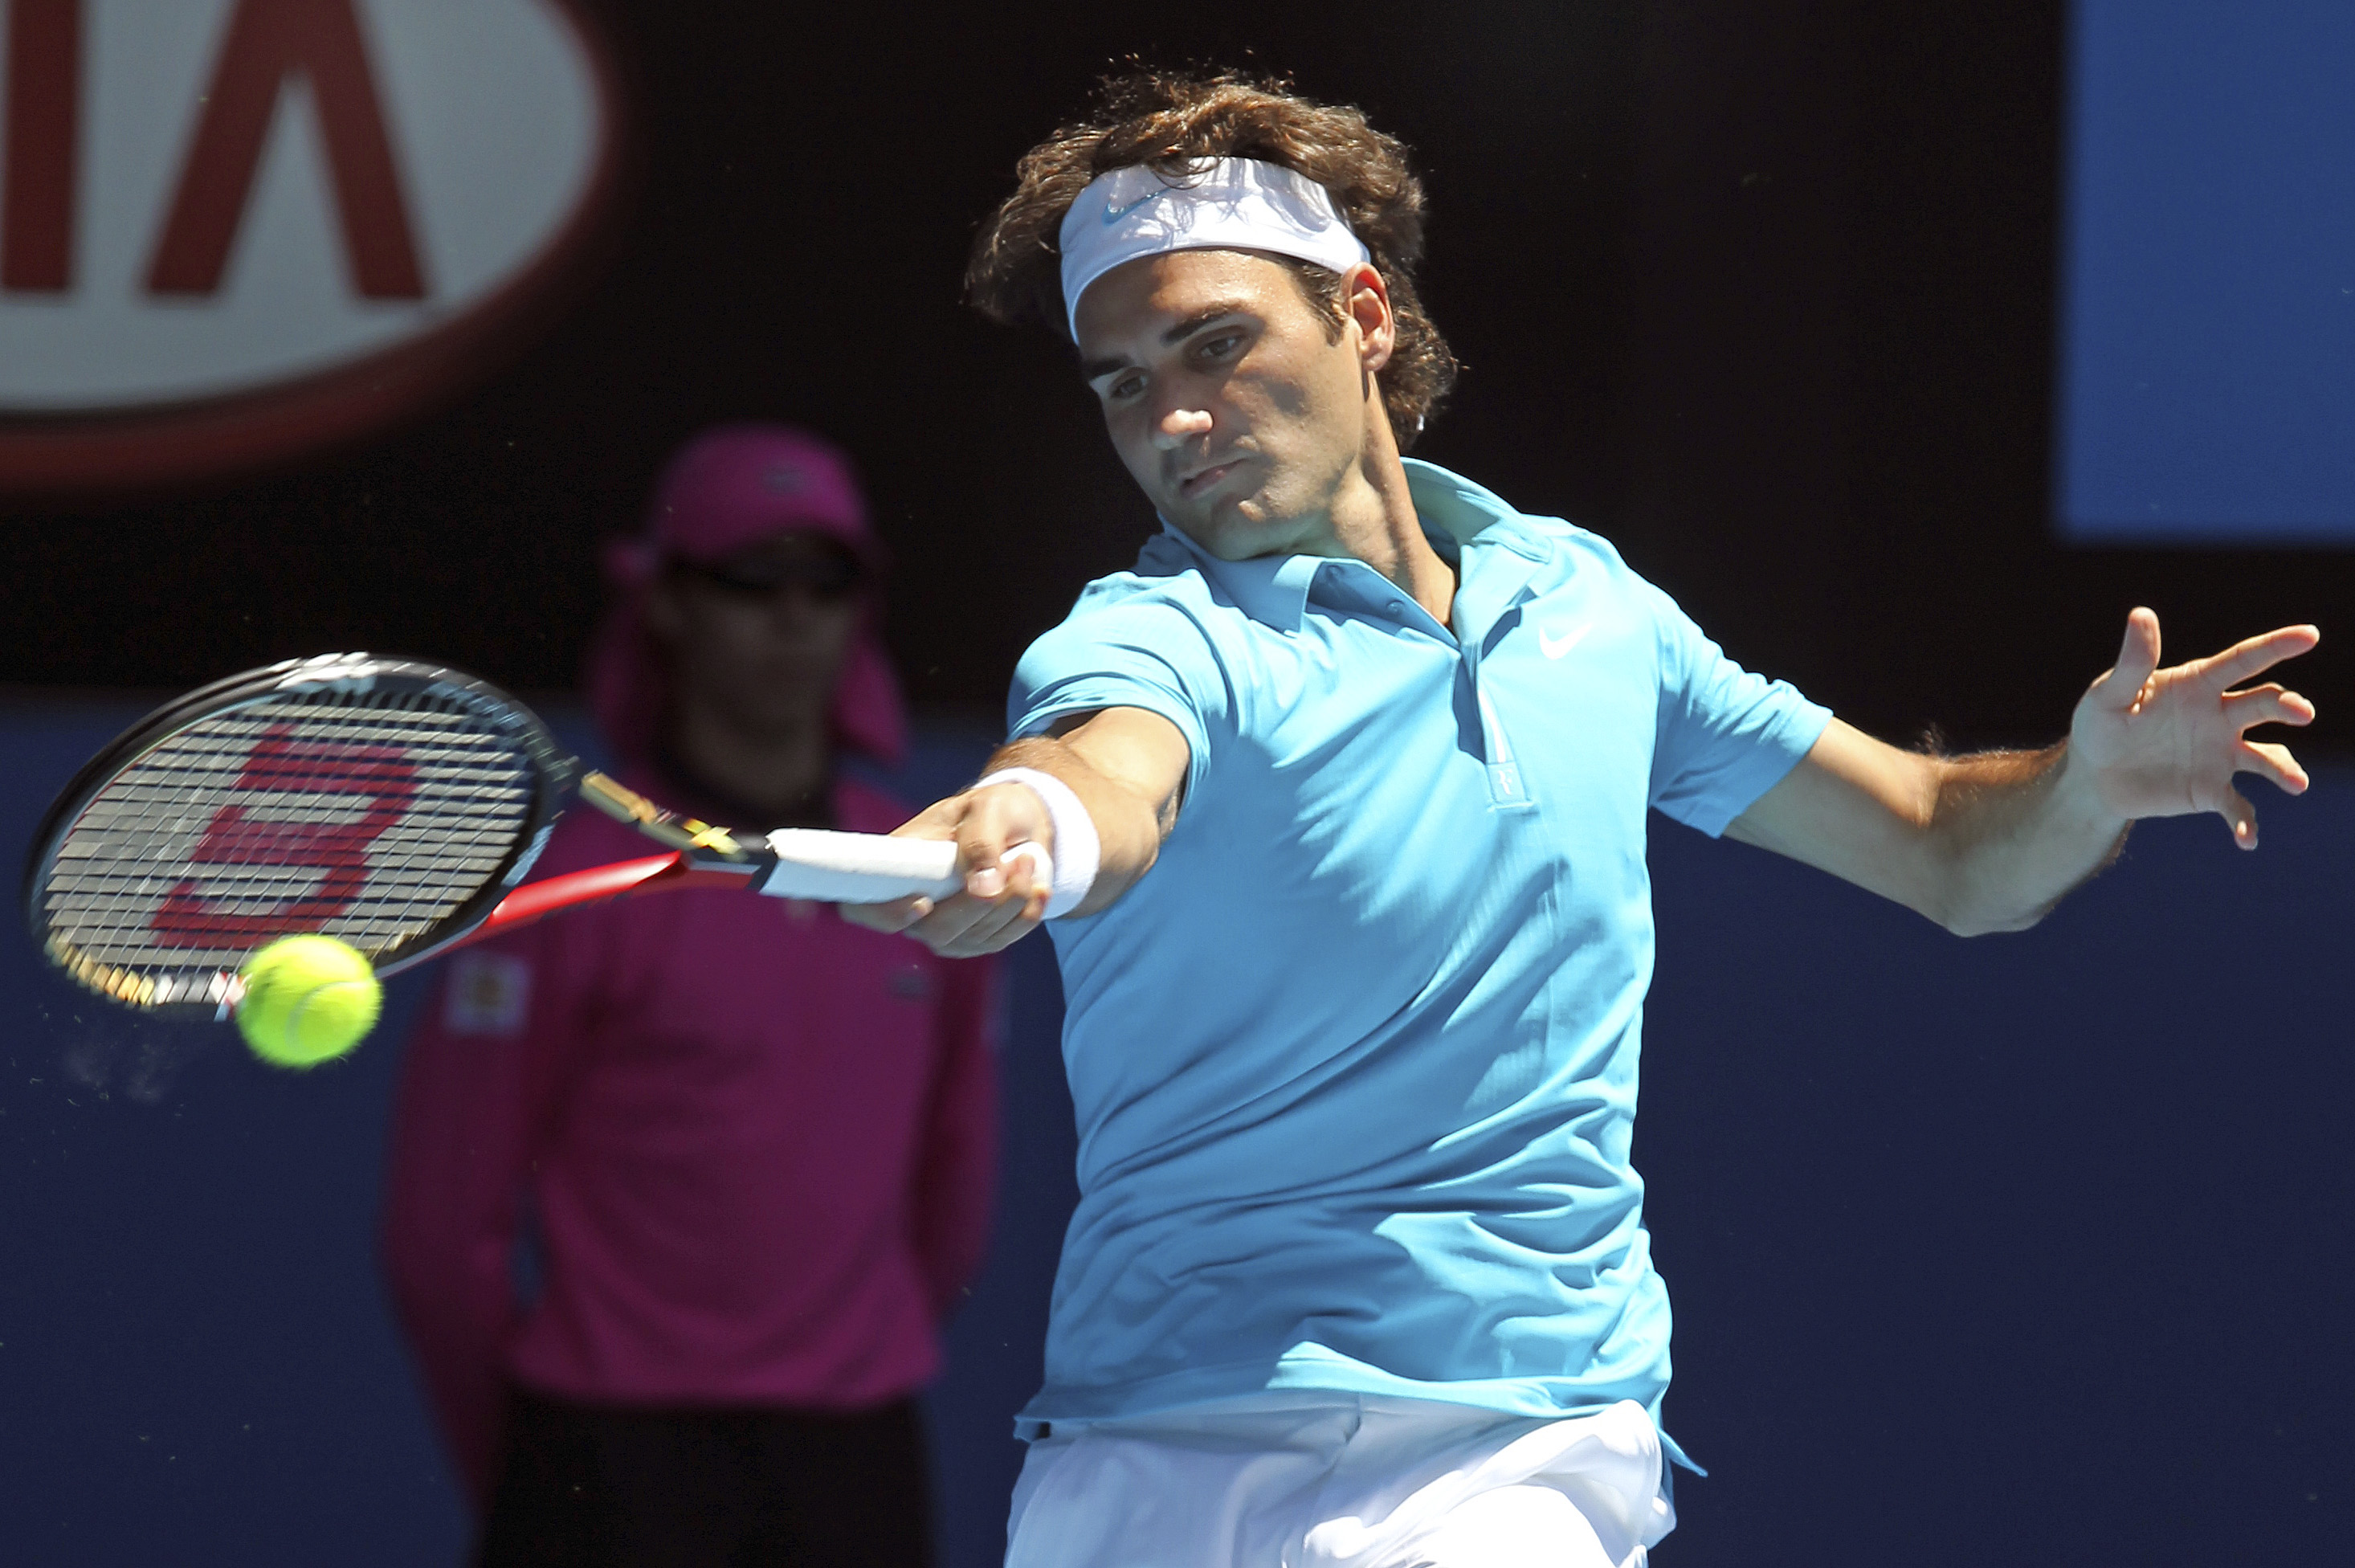 Schweizaren Roger Federer gjorde vad Robin Söderling misslyckades med - att ta sig vidare till andra omgången i Australian Open. 